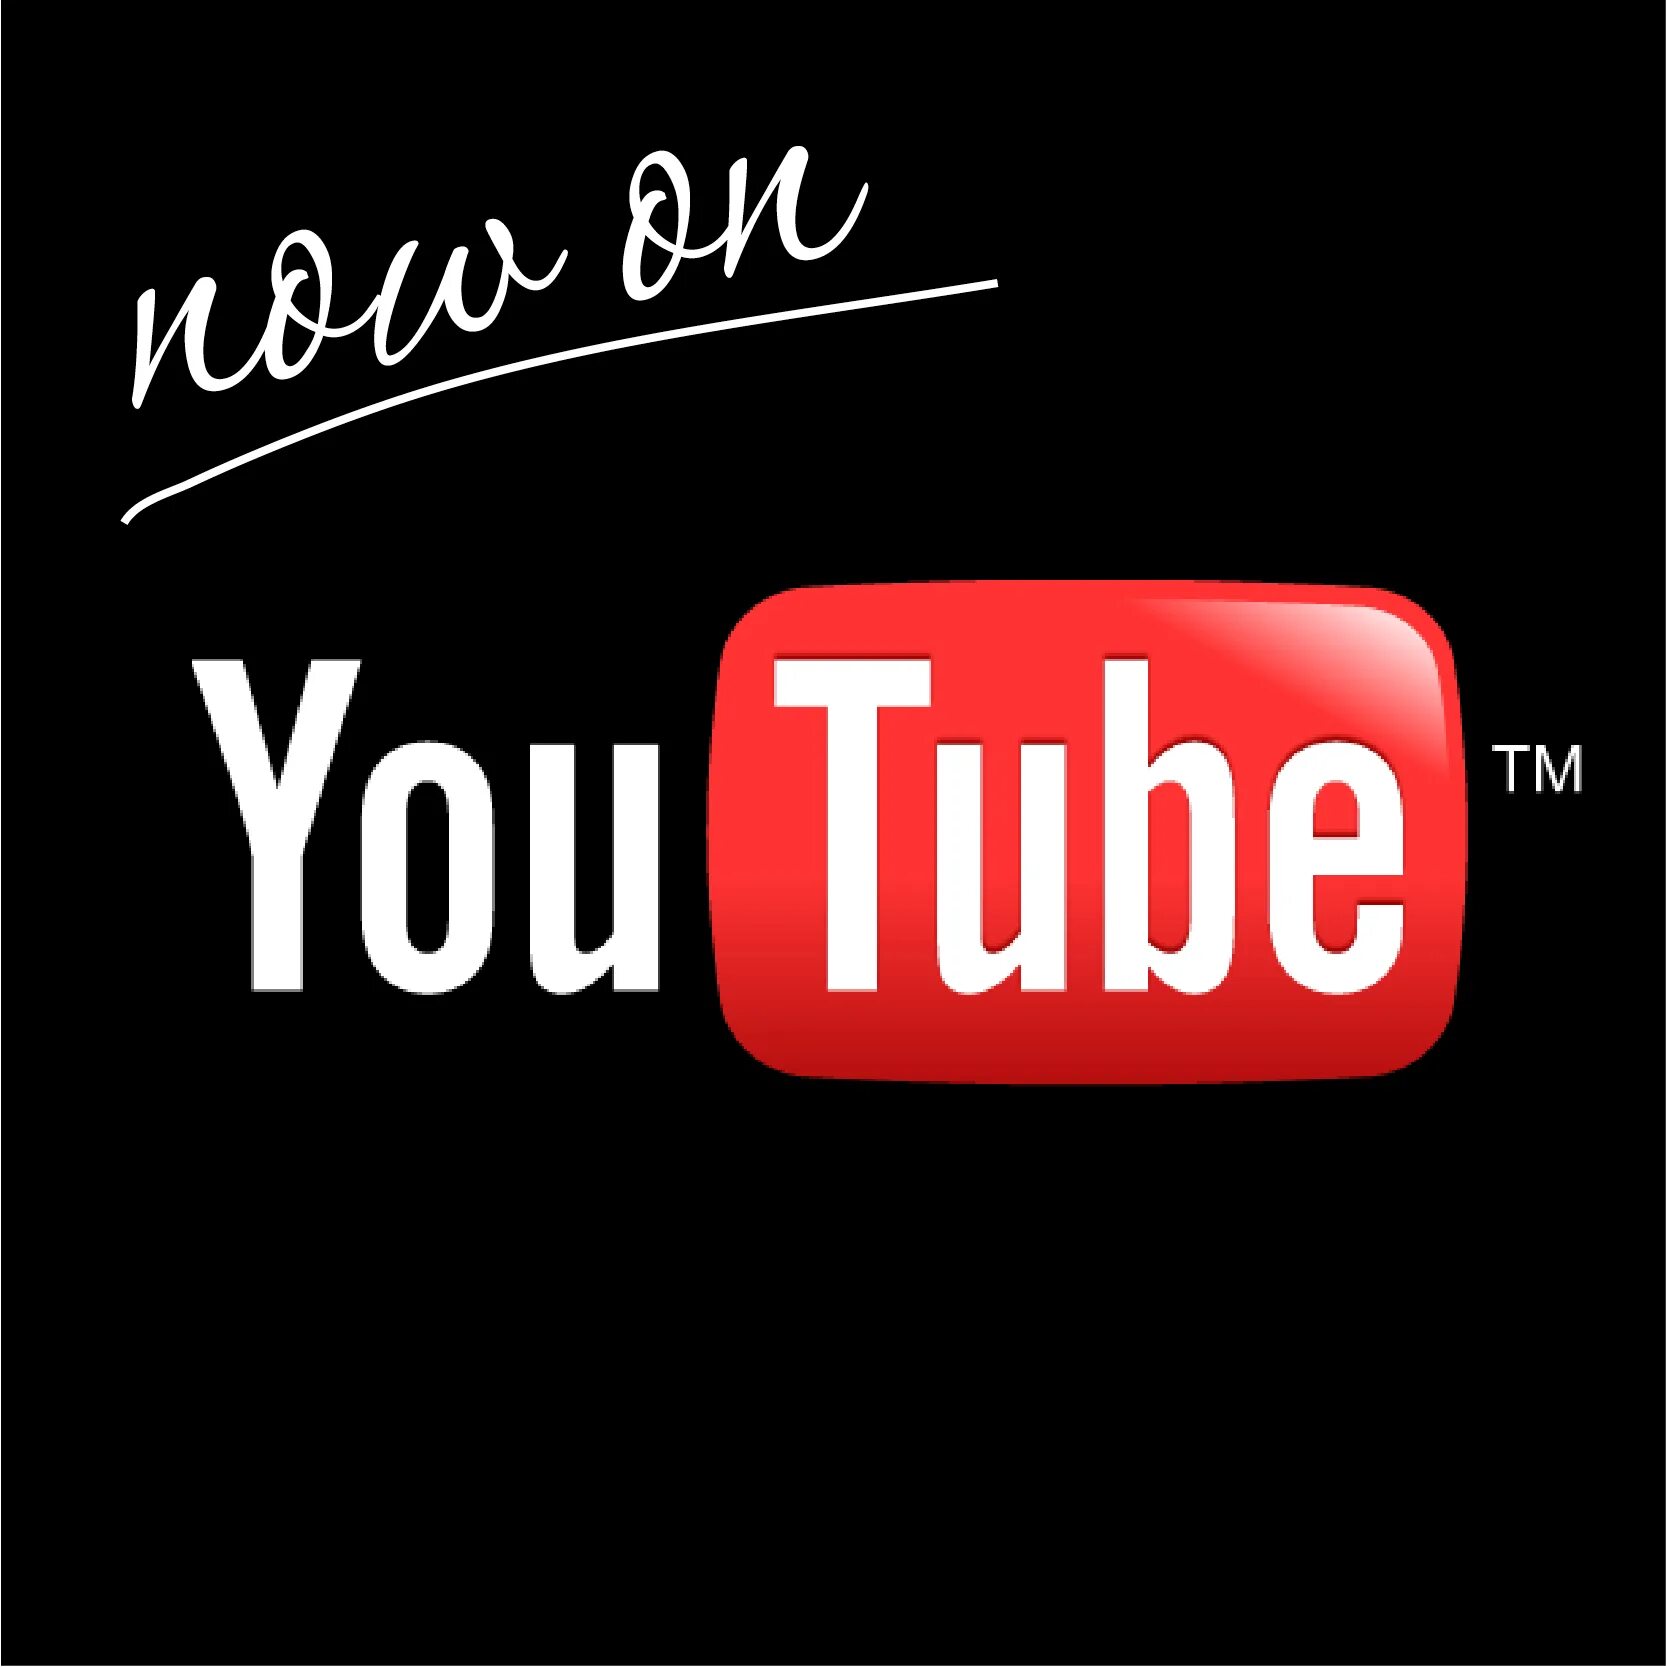 Ne официальная страница 1. ЮТП. Youtube фото. Эмблема ютуб. Новый логотип ютуб.